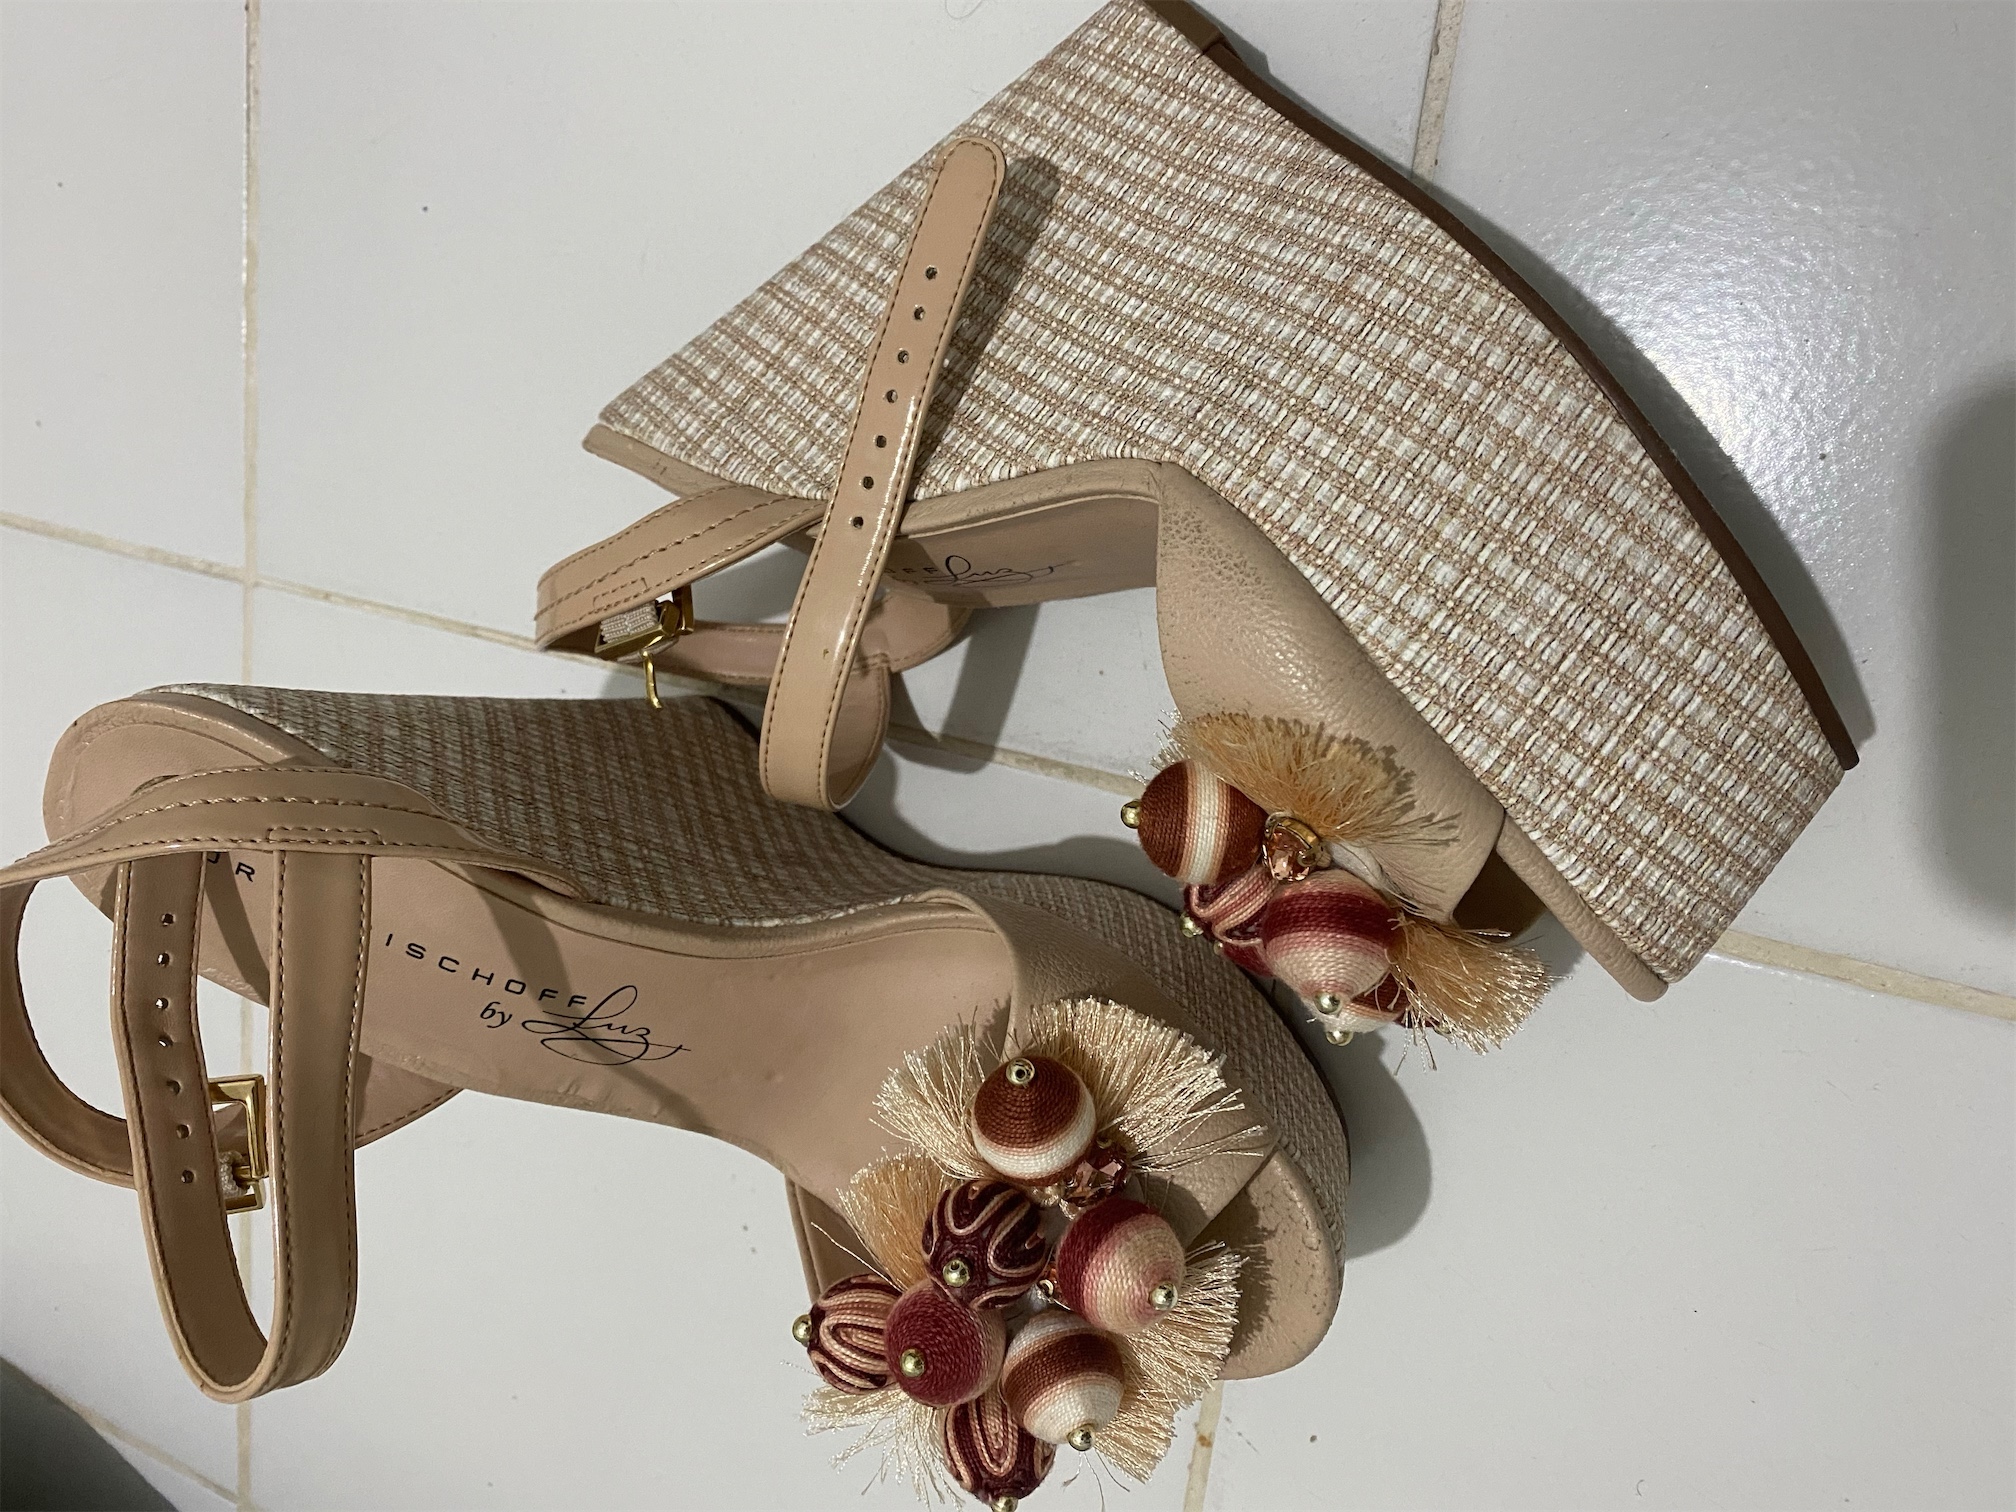 zapatos para mujer - Zapatillas brasilleñas jorge bischoff by luz garcia s